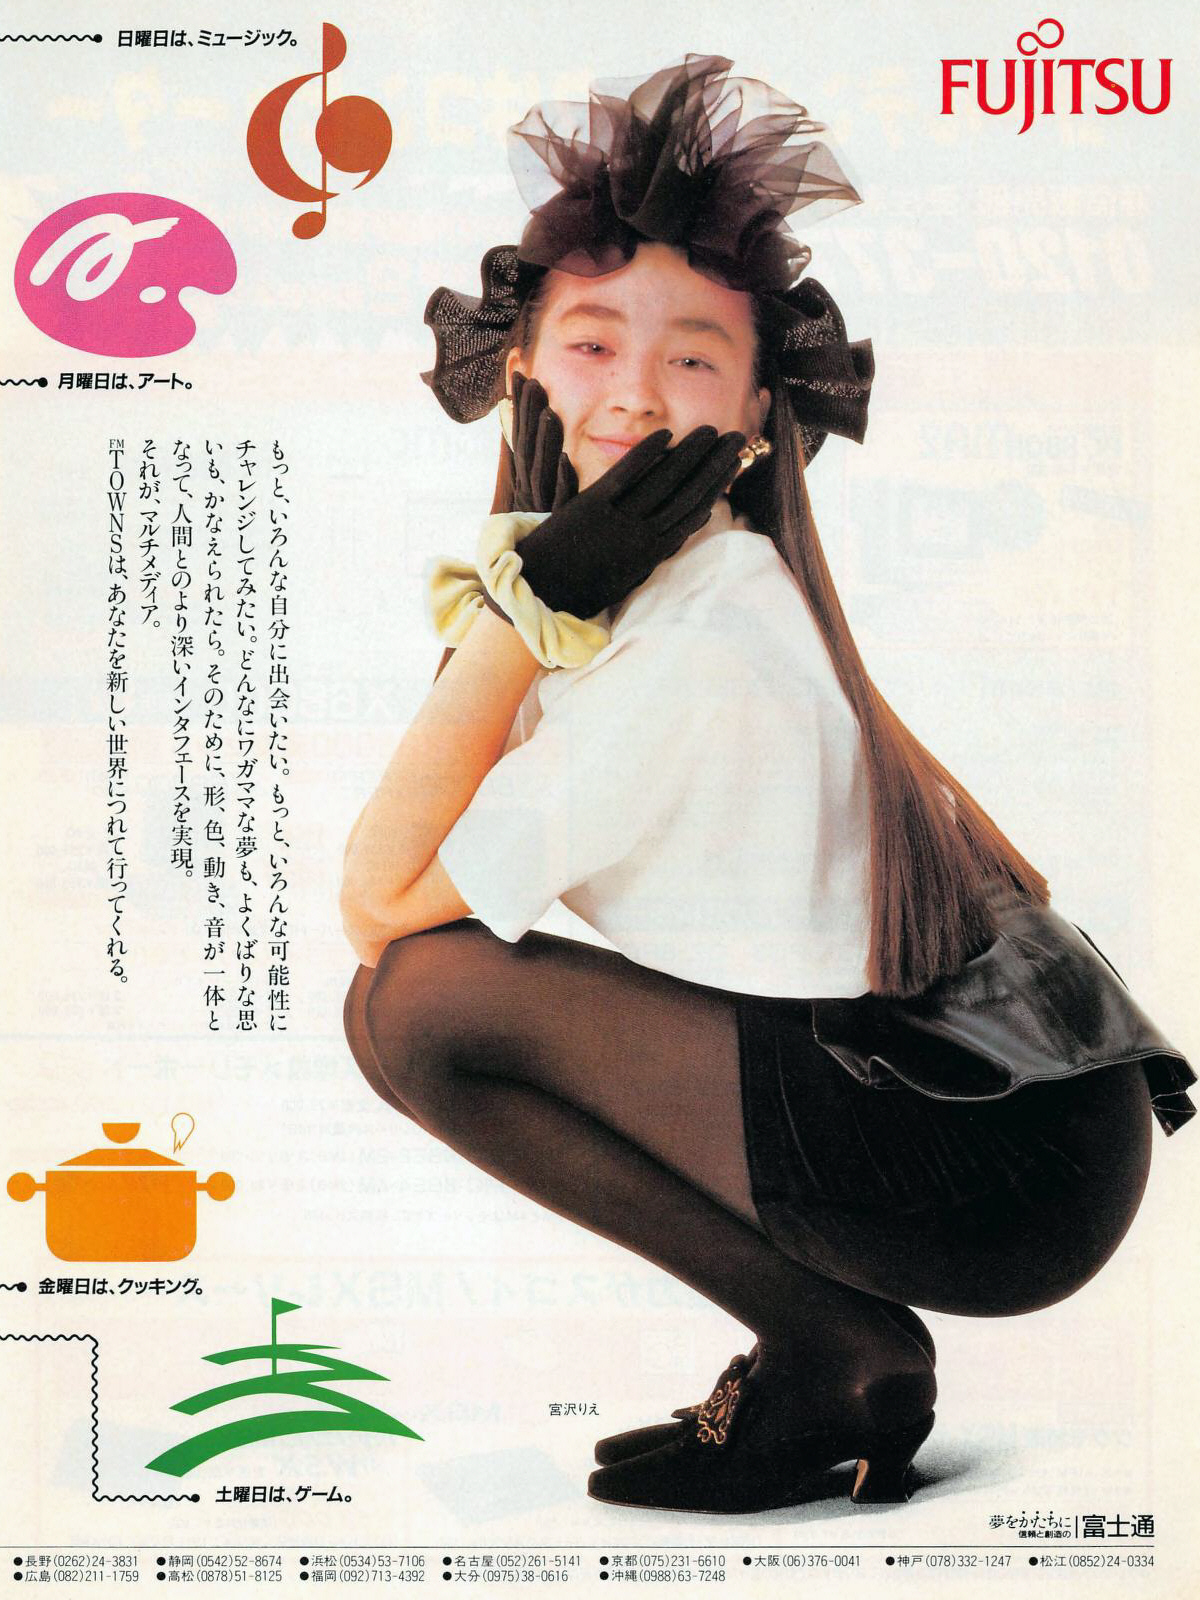 宮沢りえさんの若い頃 パソコンの広告によく出ていました